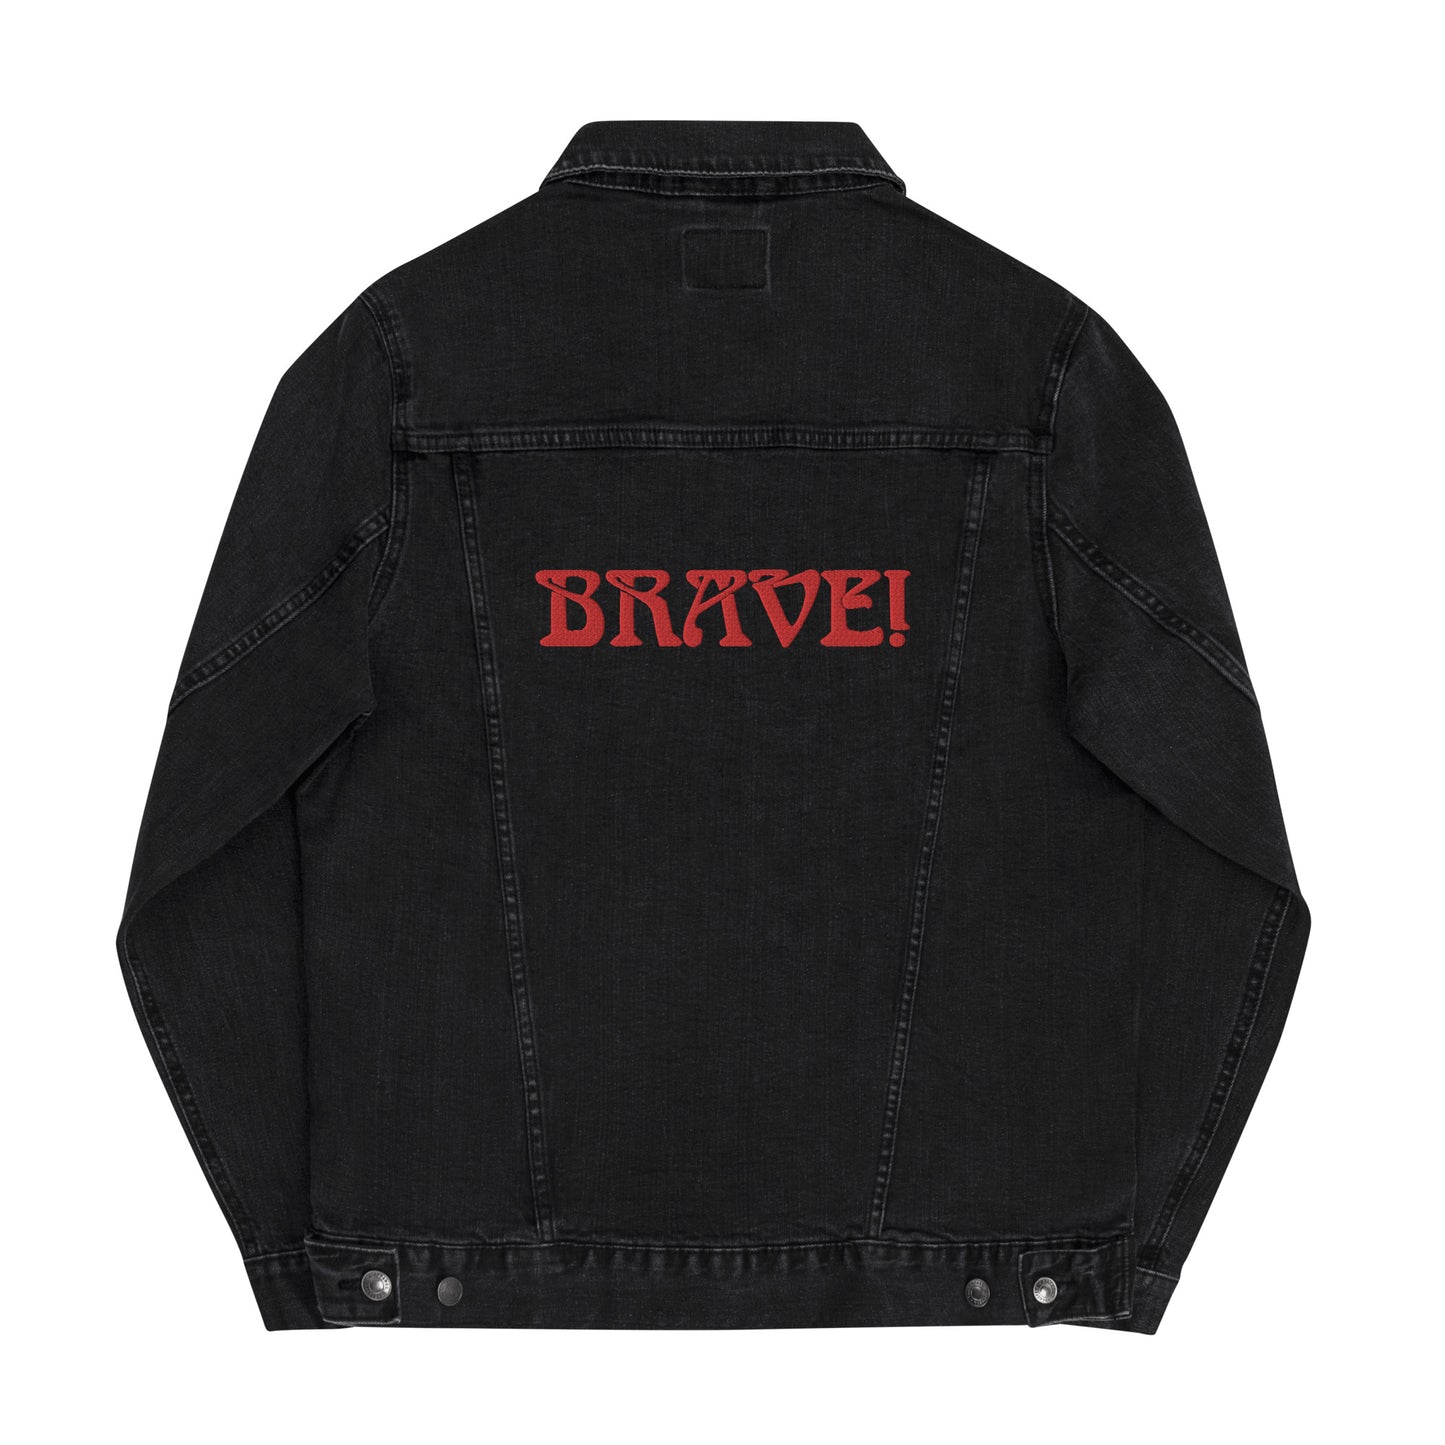 “BRAVE!”Unisex Denim Jacket W/Red Font